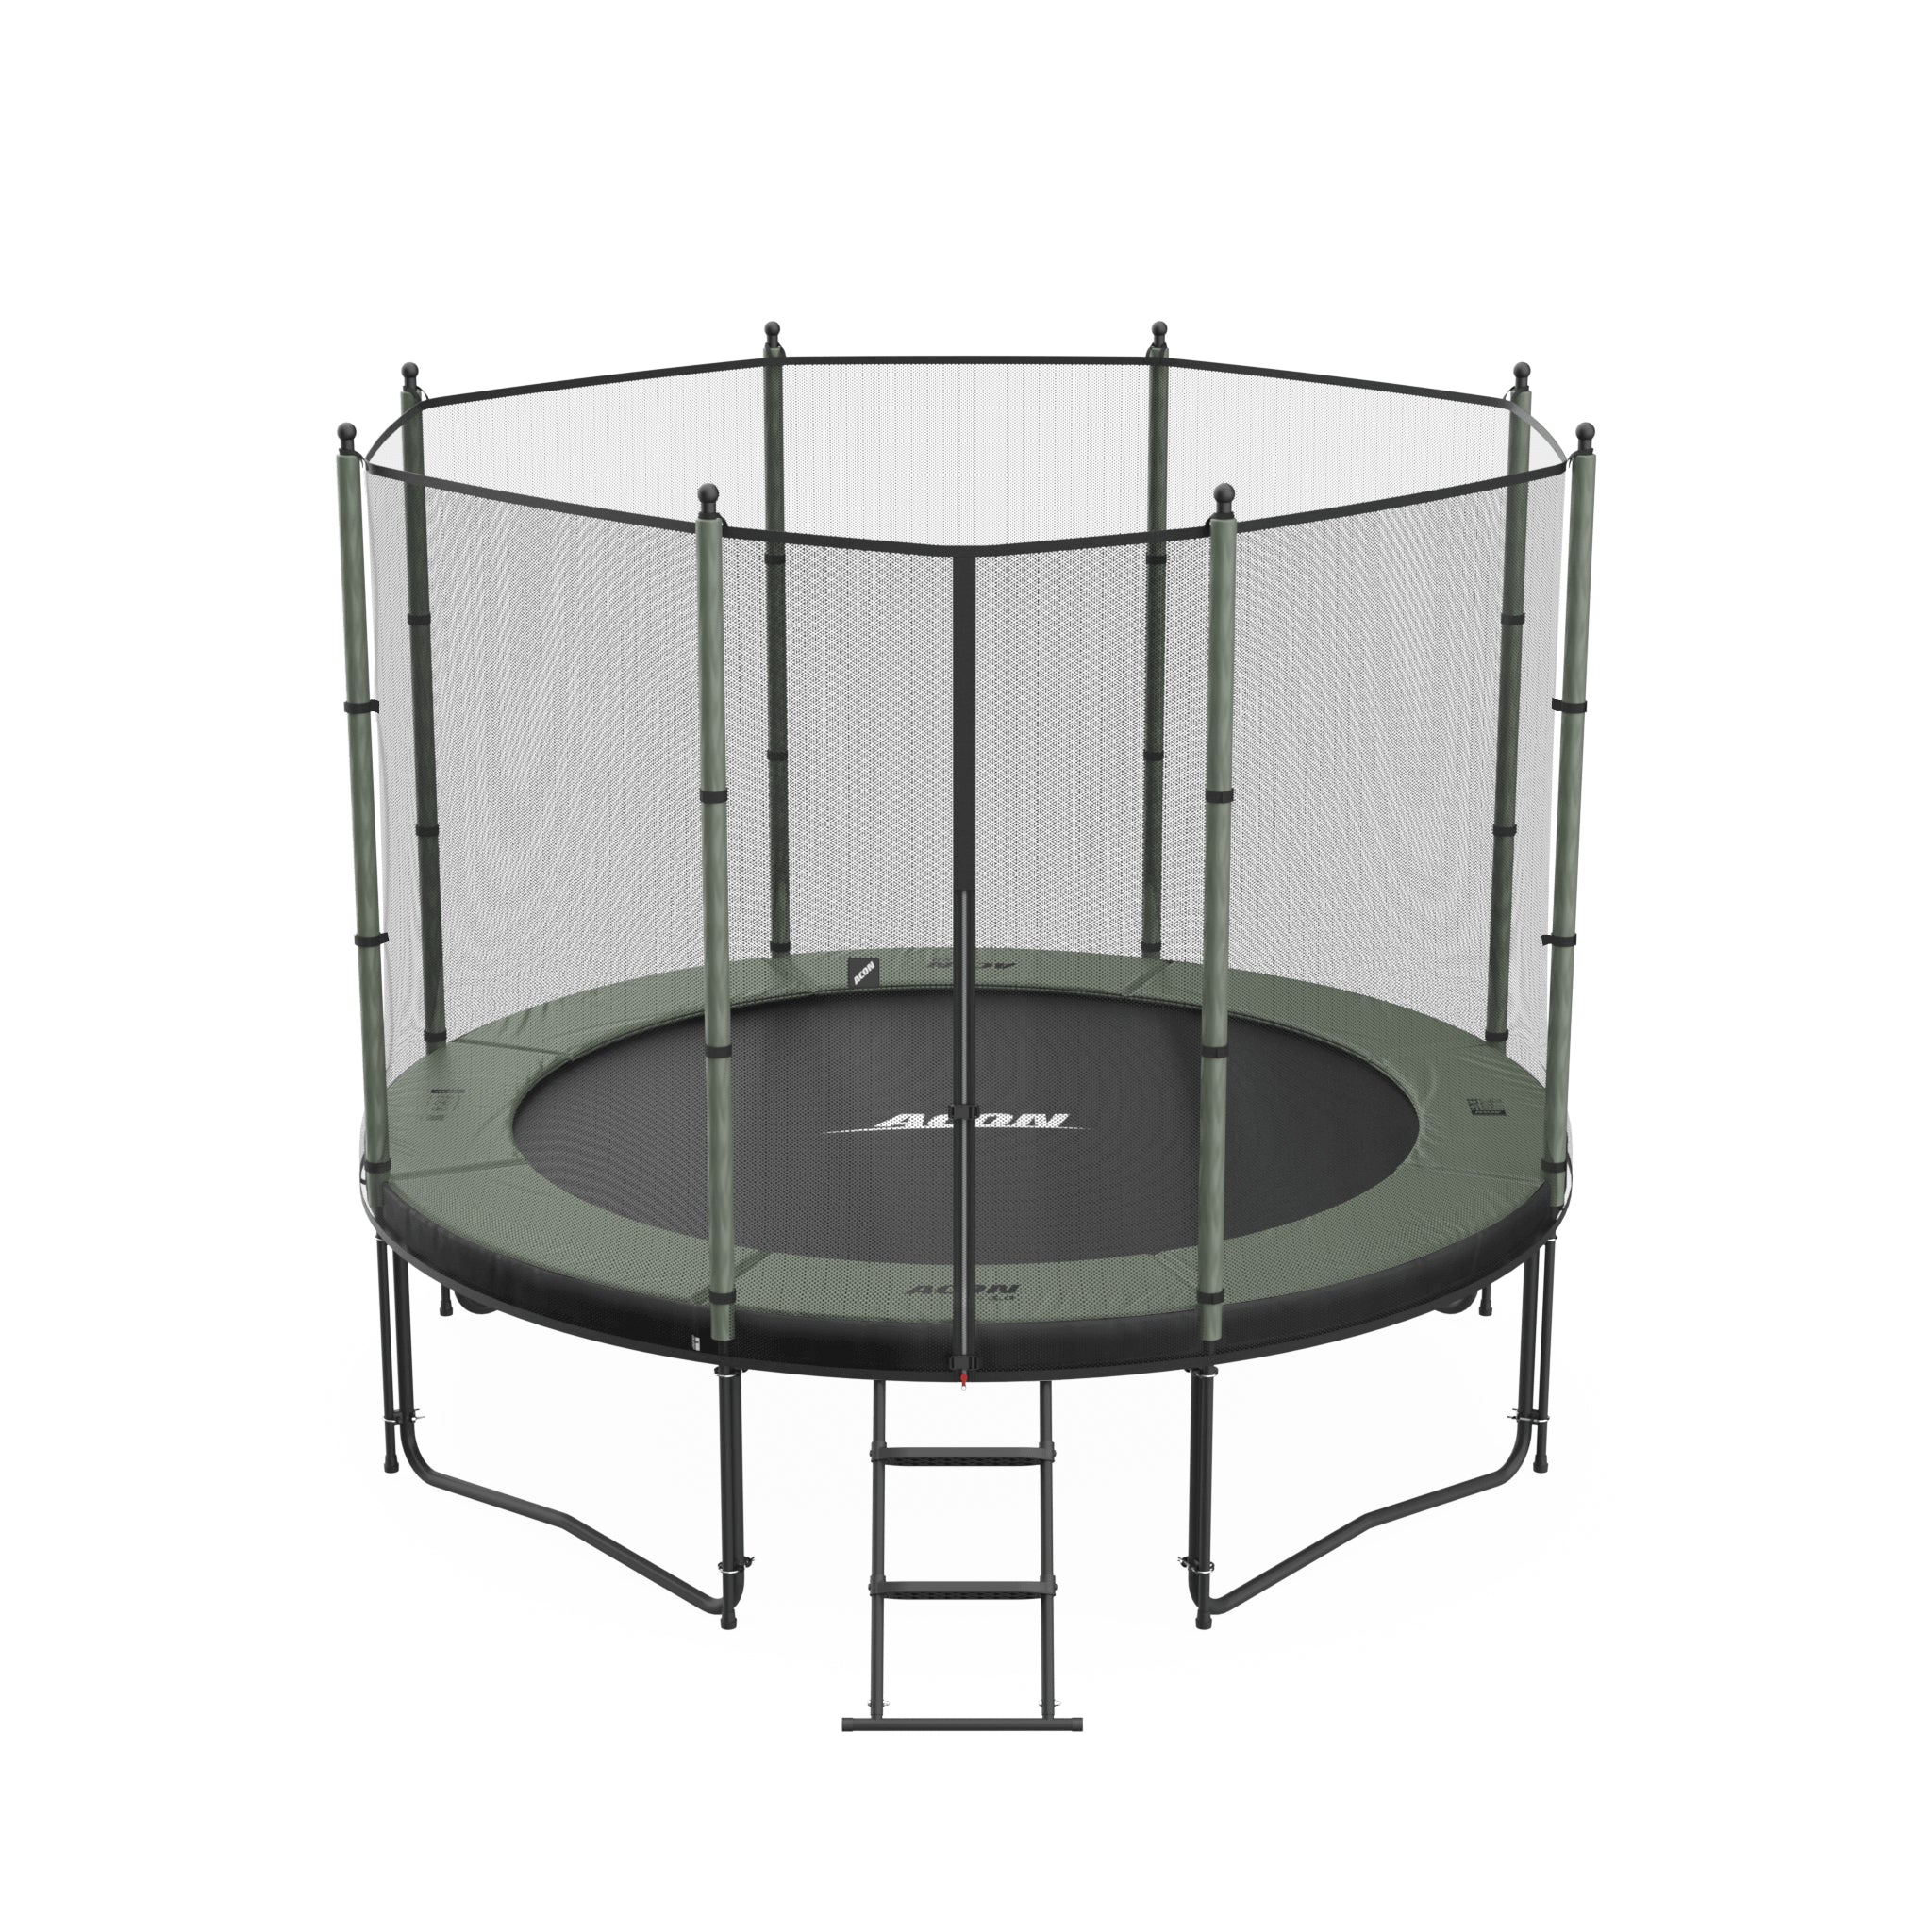 ACON Air 3,0m trampoliini, jossa on Standard turvaverkko ja tikkaat.